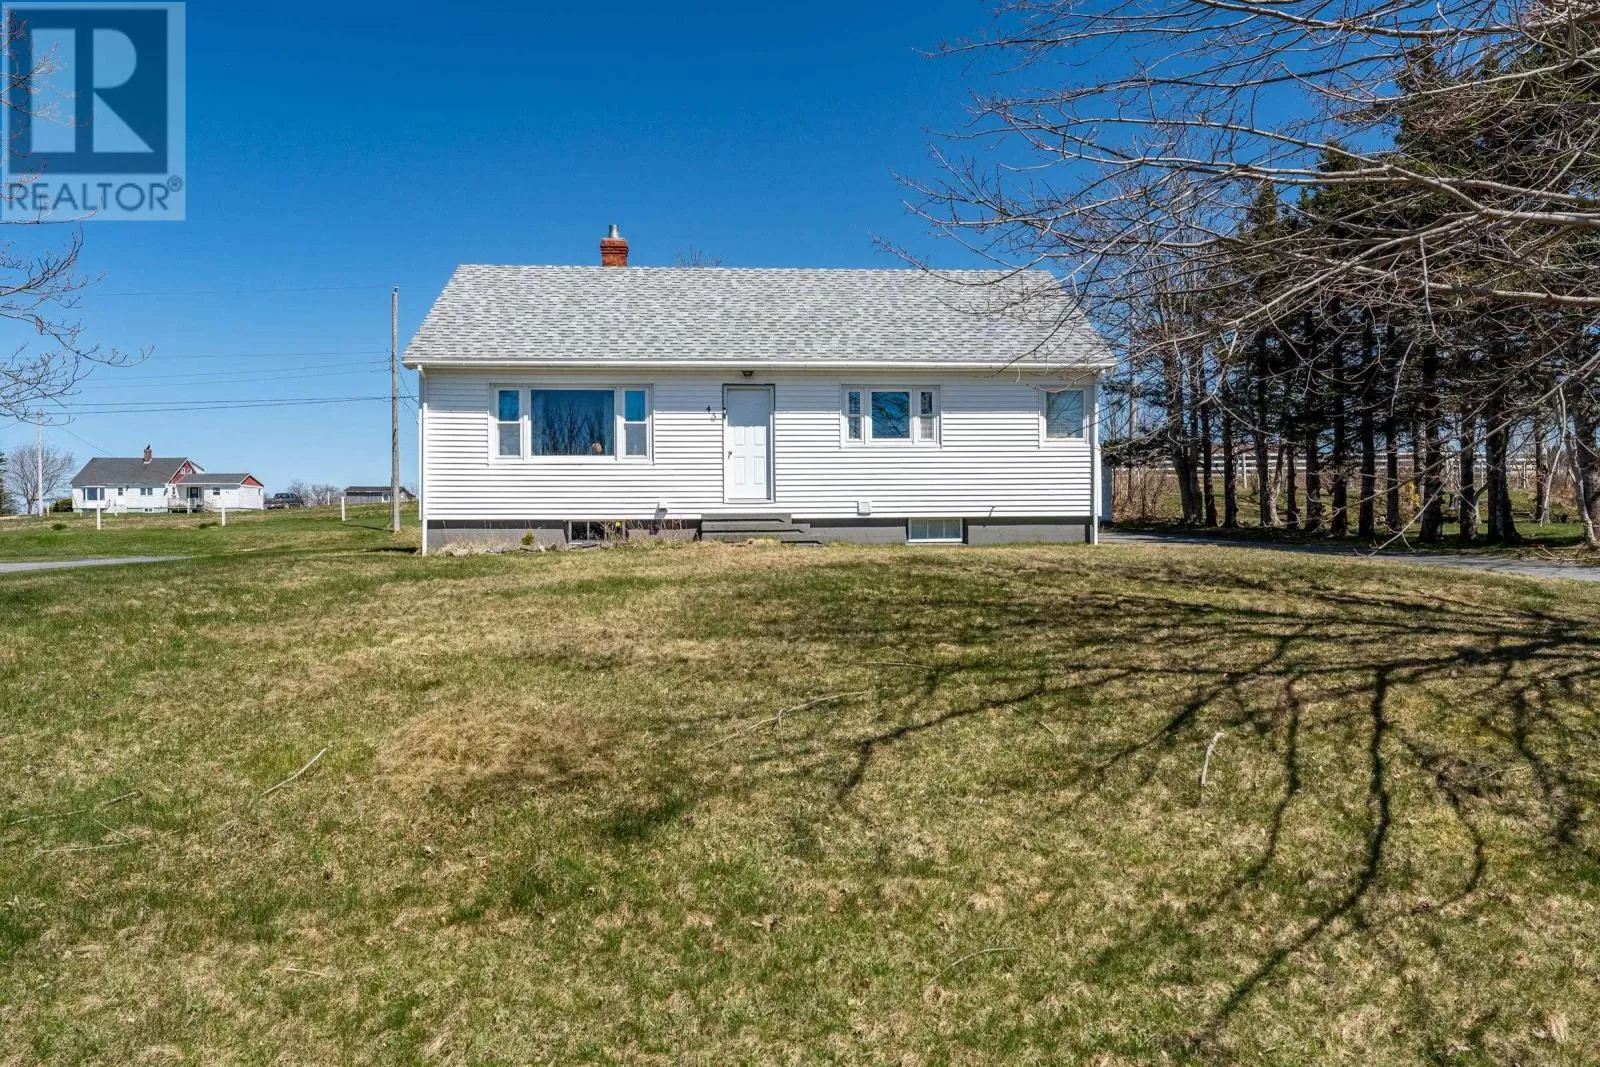 House for rent: 43 Belle Vue St, Belliveaus Cove, Nova Scotia B0W 1M0